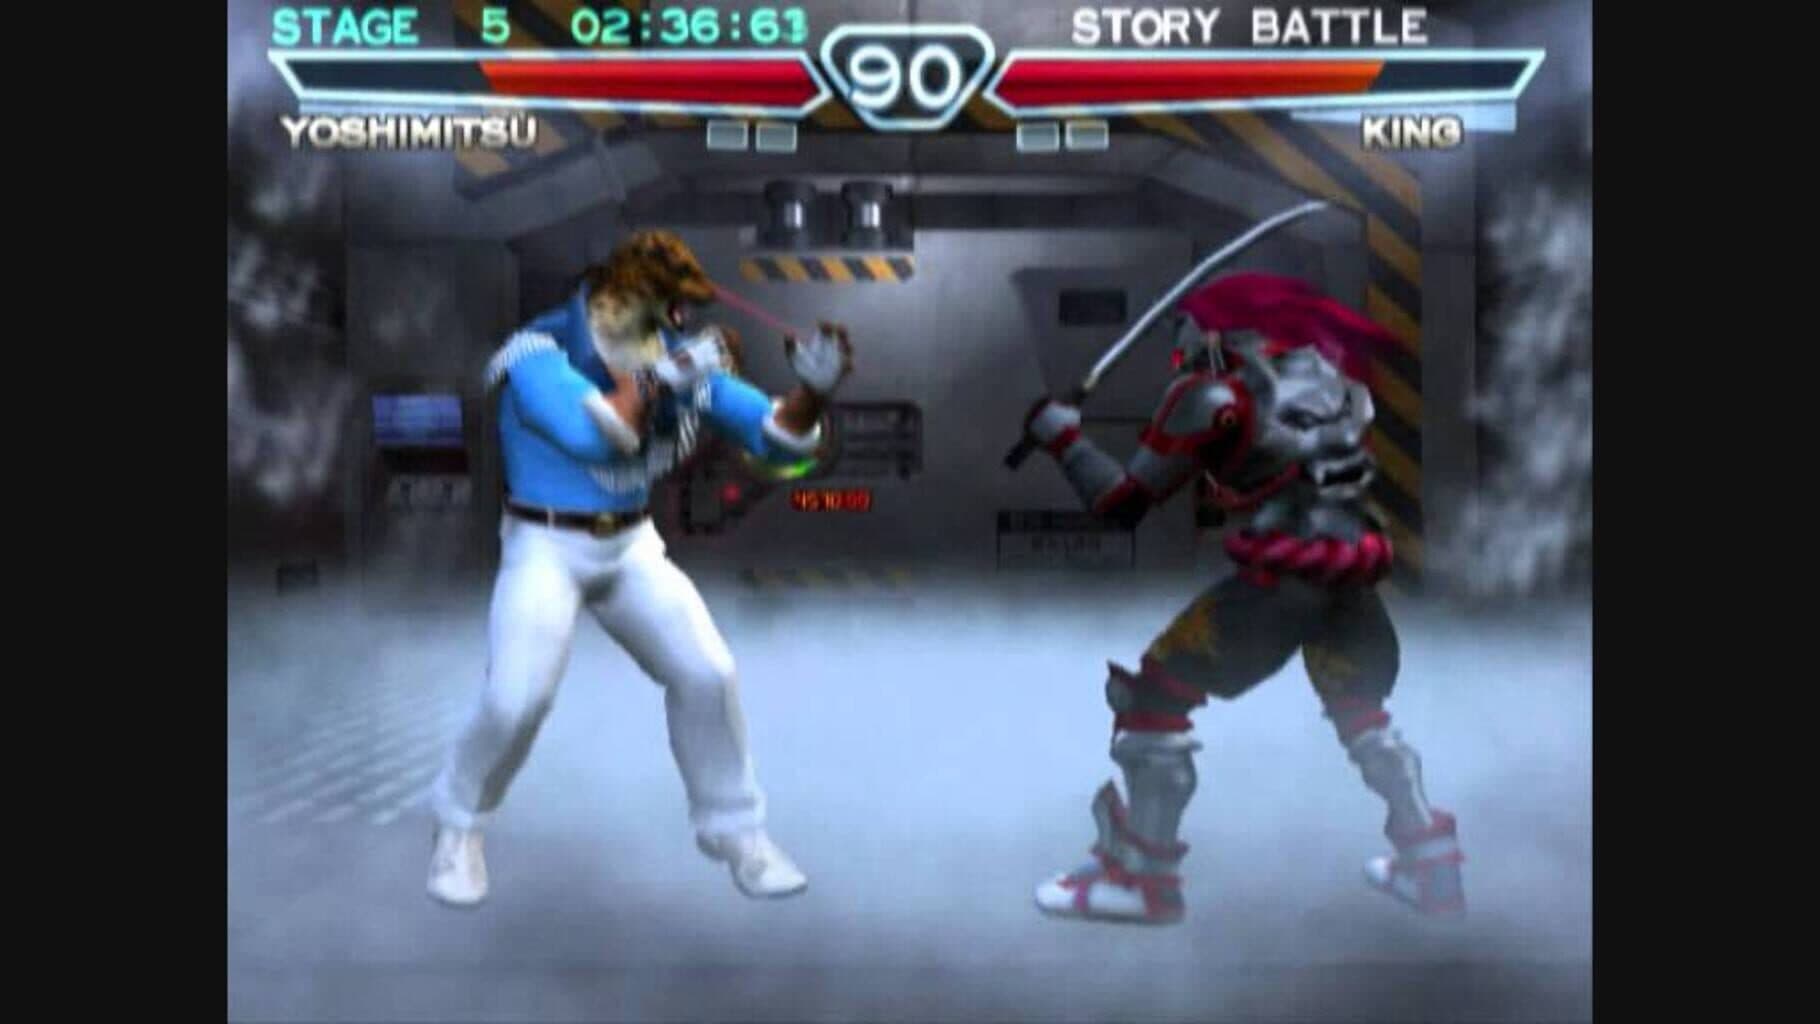 Tekken 4 Image